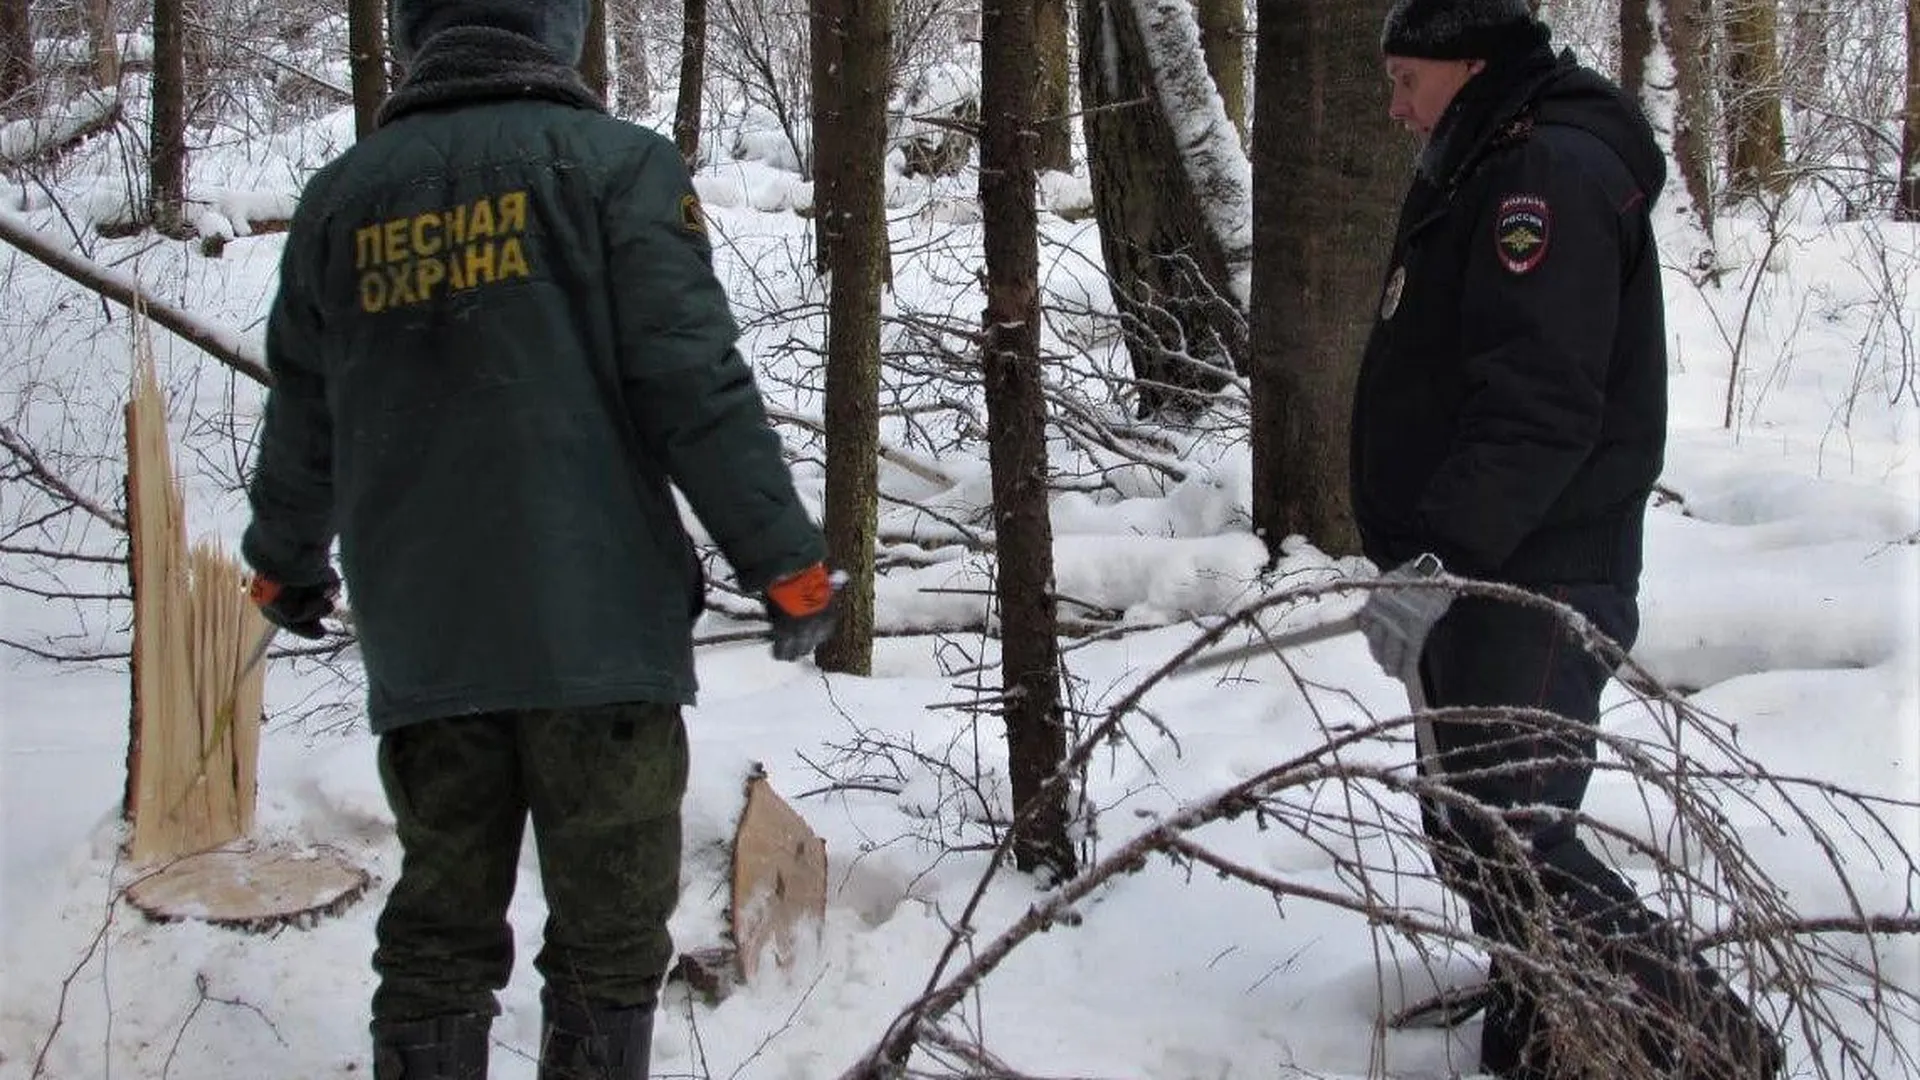 Мероприятия по предотвращению незаконной рубки стартуют в Подмосковье 25 января